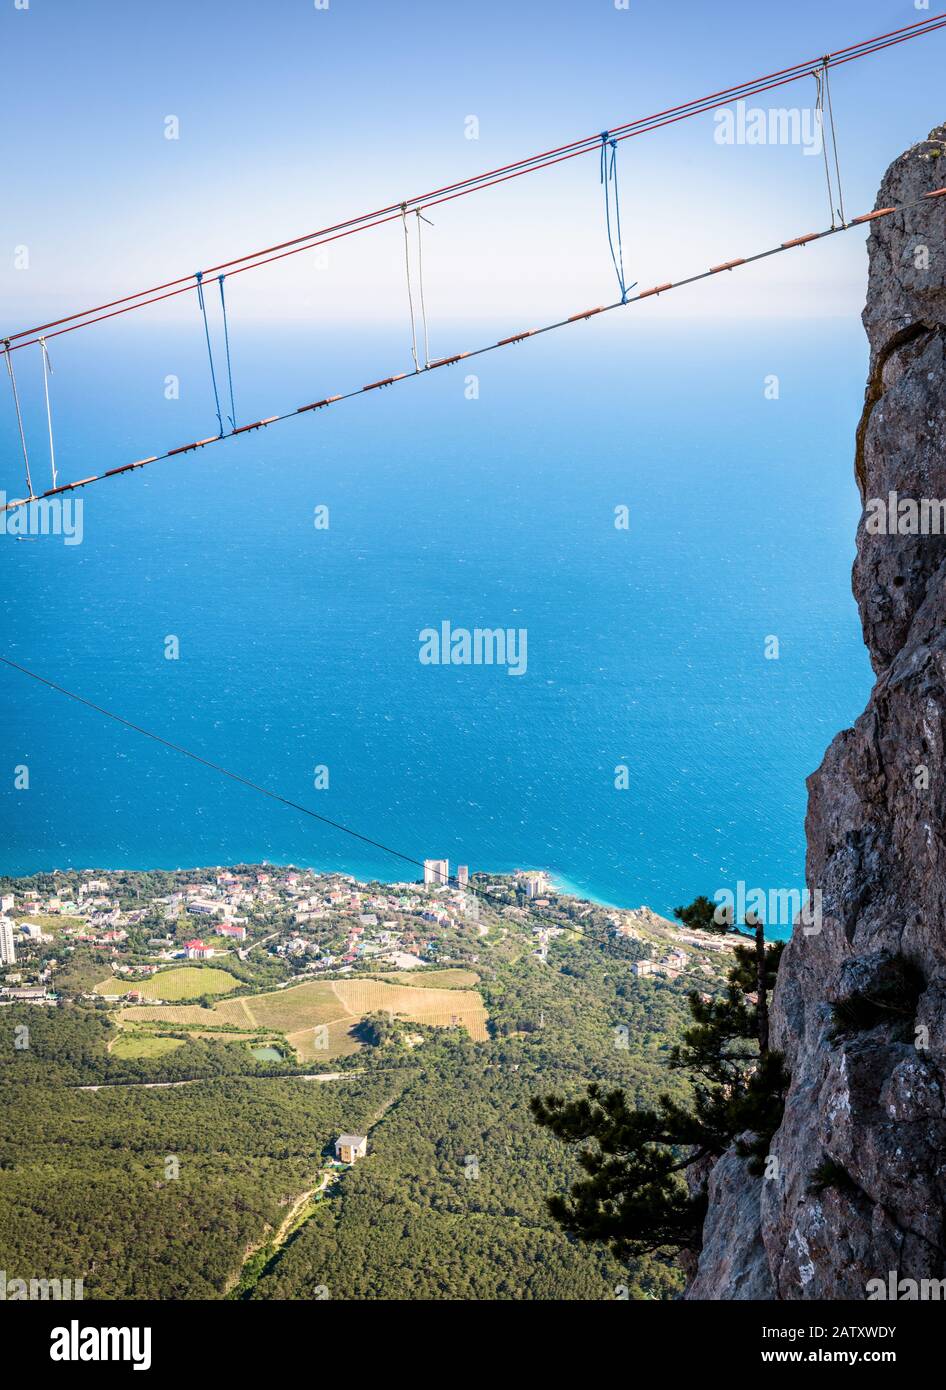 Seilbrücke auf dem Berg Ai-Petri über dem Abgrund, Krim, Russland. Dieser Berg ist eine der wichtigsten Touristenattraktionen der Krim. Hängebrücke über Aby Stockfoto